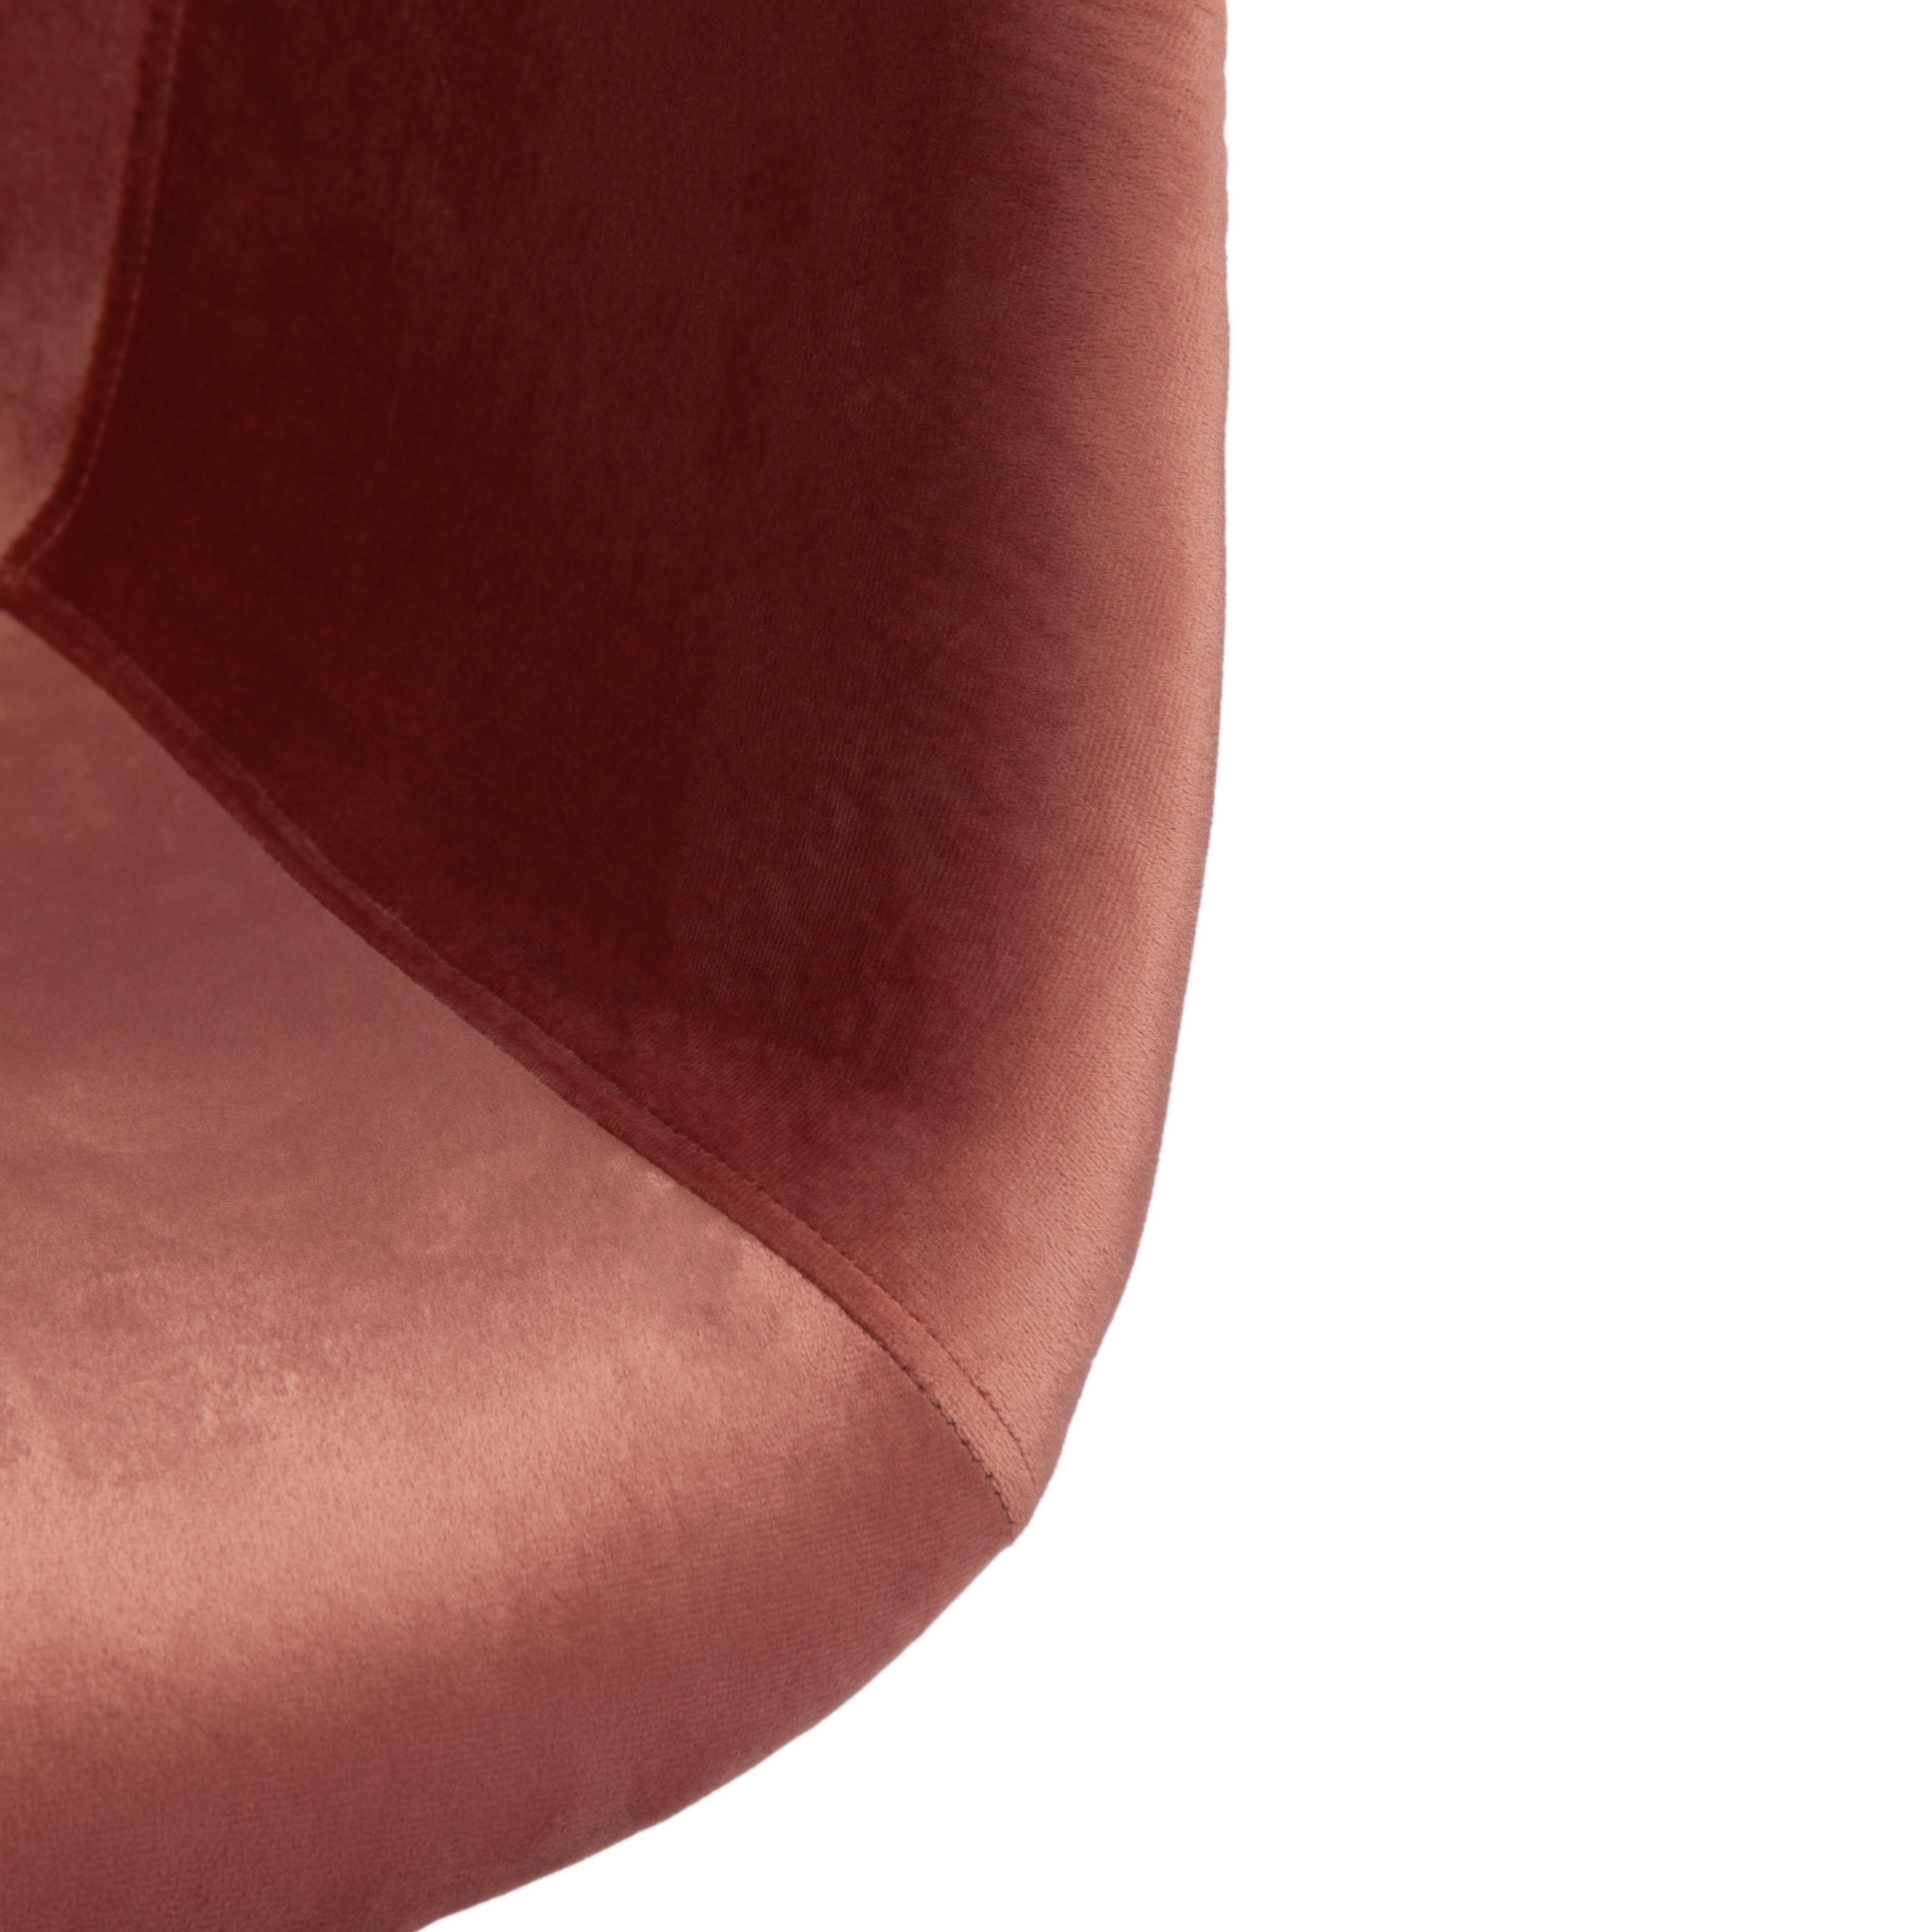 Кресло CINDY SOFT (EAMES) (mod. 101) дерево береза/металл/мягкое сиденье/ткань, 61 х 60 х 80 см , коралловый (HLR 44)/натуральный